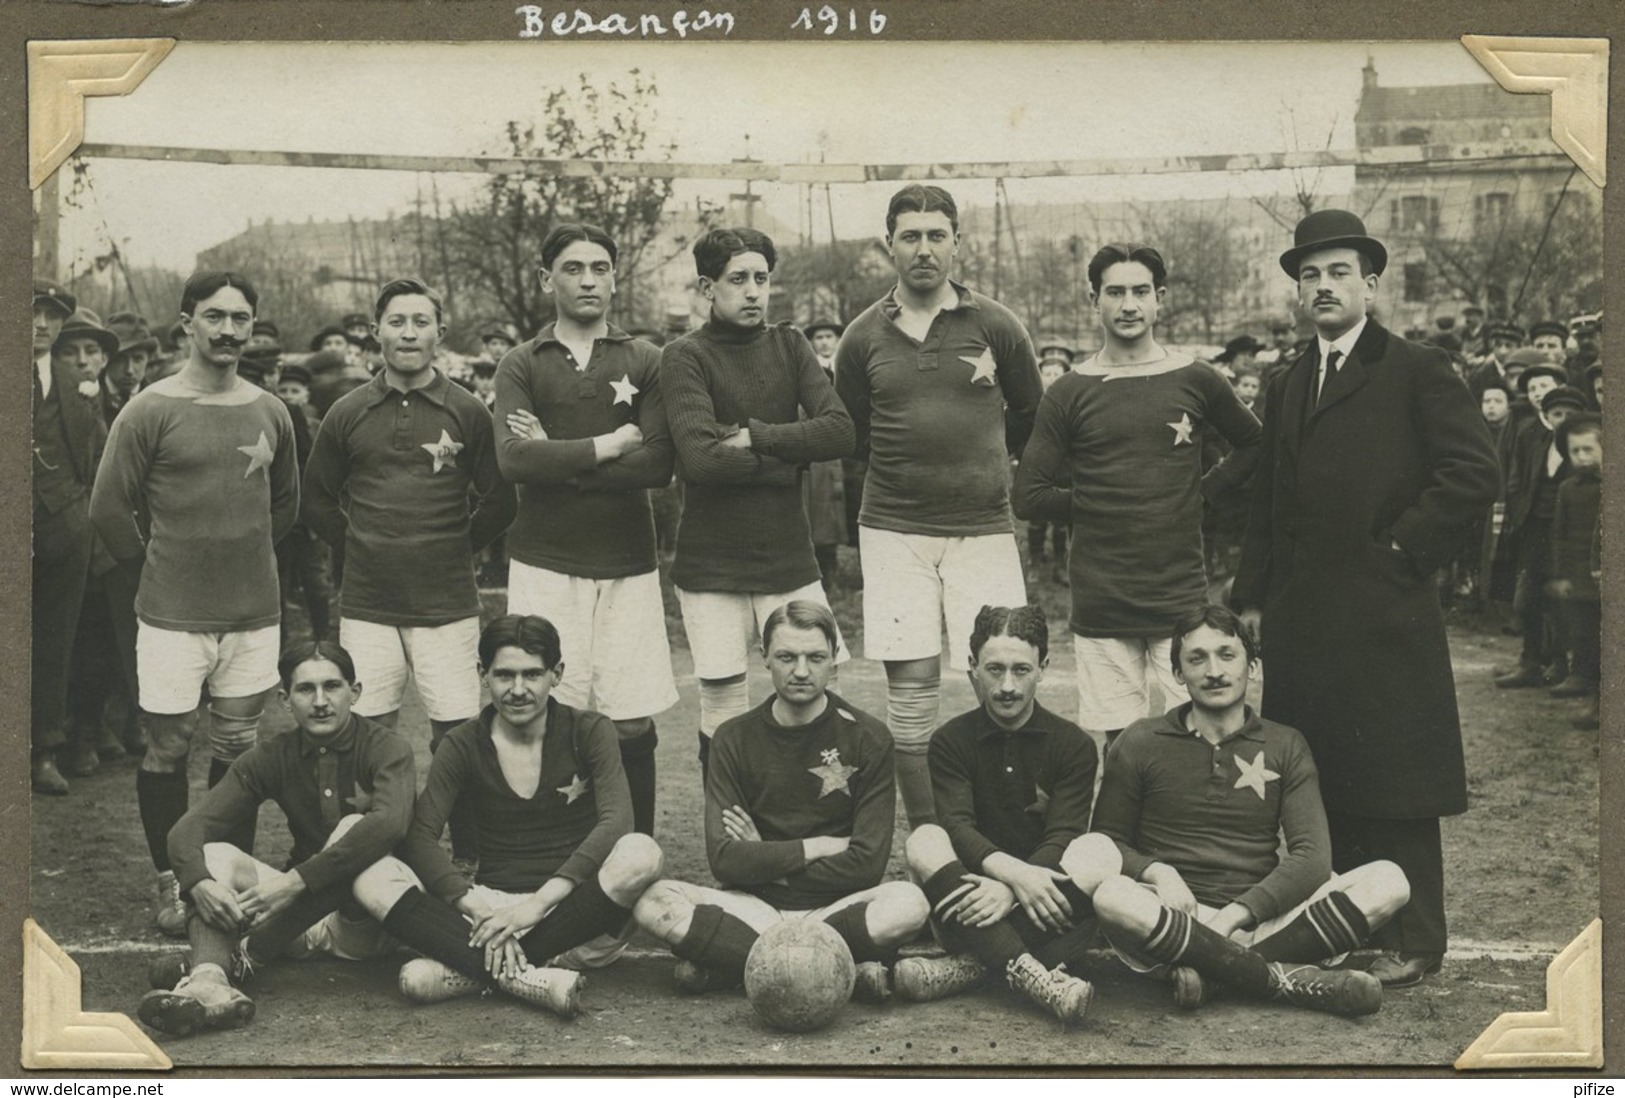 Carte Photo D'une équipe De Football Légendée "Besançon 1916". Equipe De Paris ? (Etoile , EDL). - Football